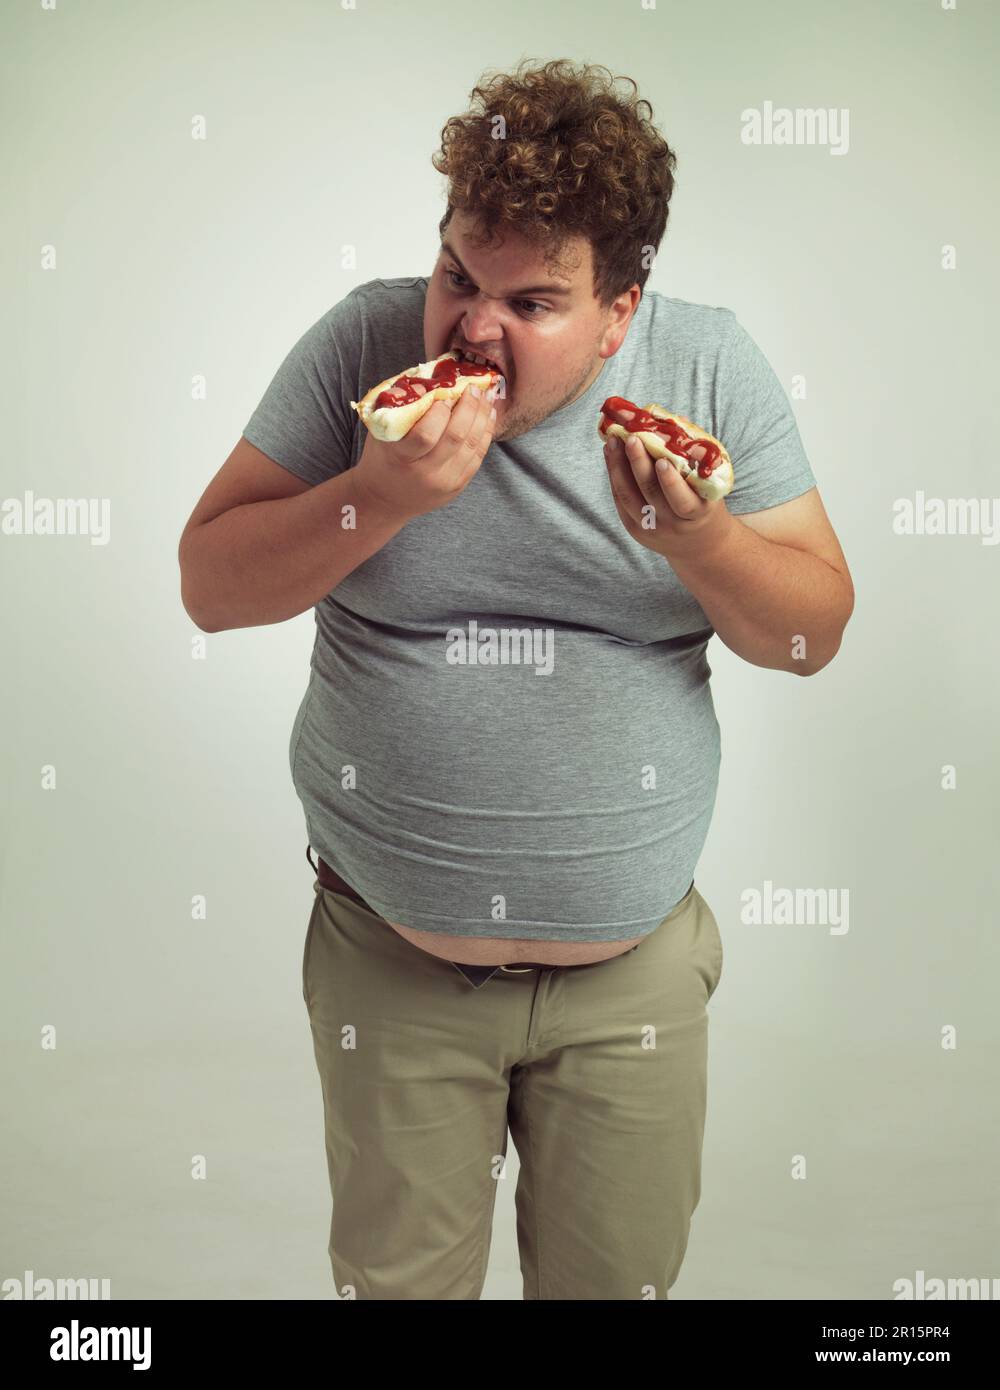 La nourriture parfaite pour une journée de jeu. Studio photo d'un homme en surpoids mangeant deux hot dogs à la fois. Banque D'Images